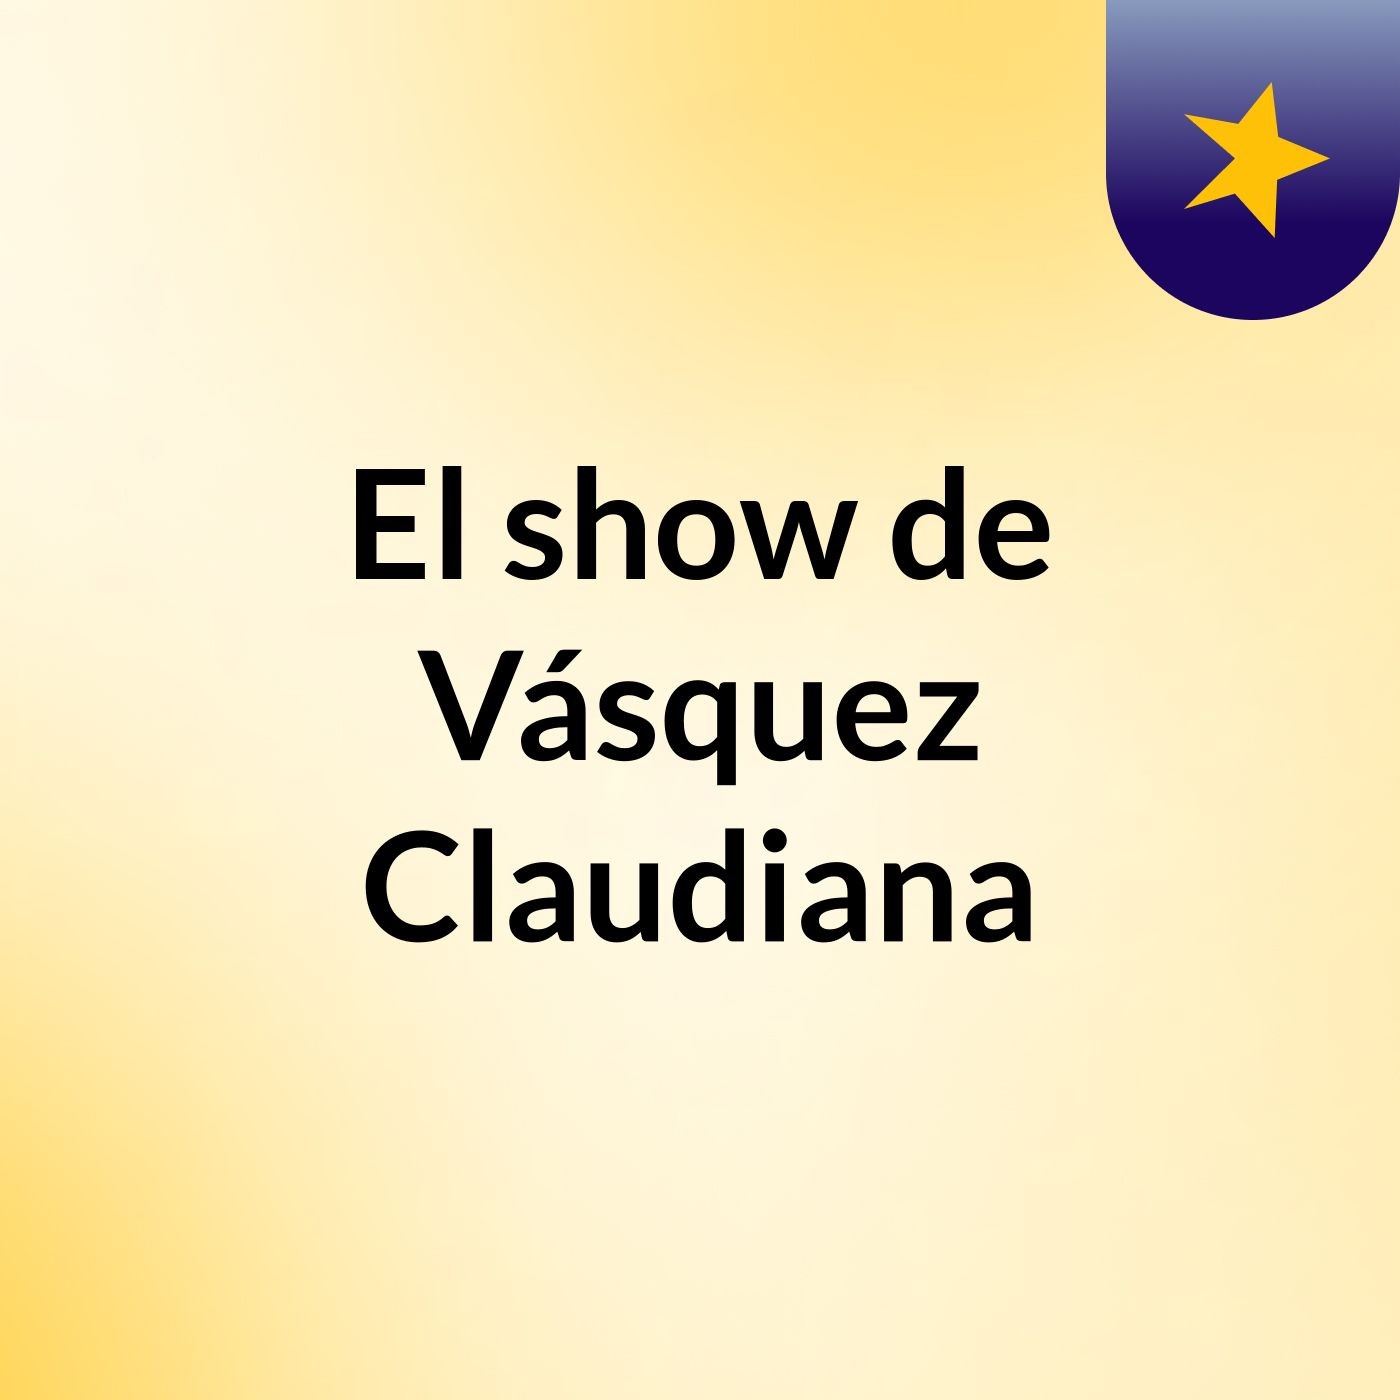 El show de Vásquez Claudiana